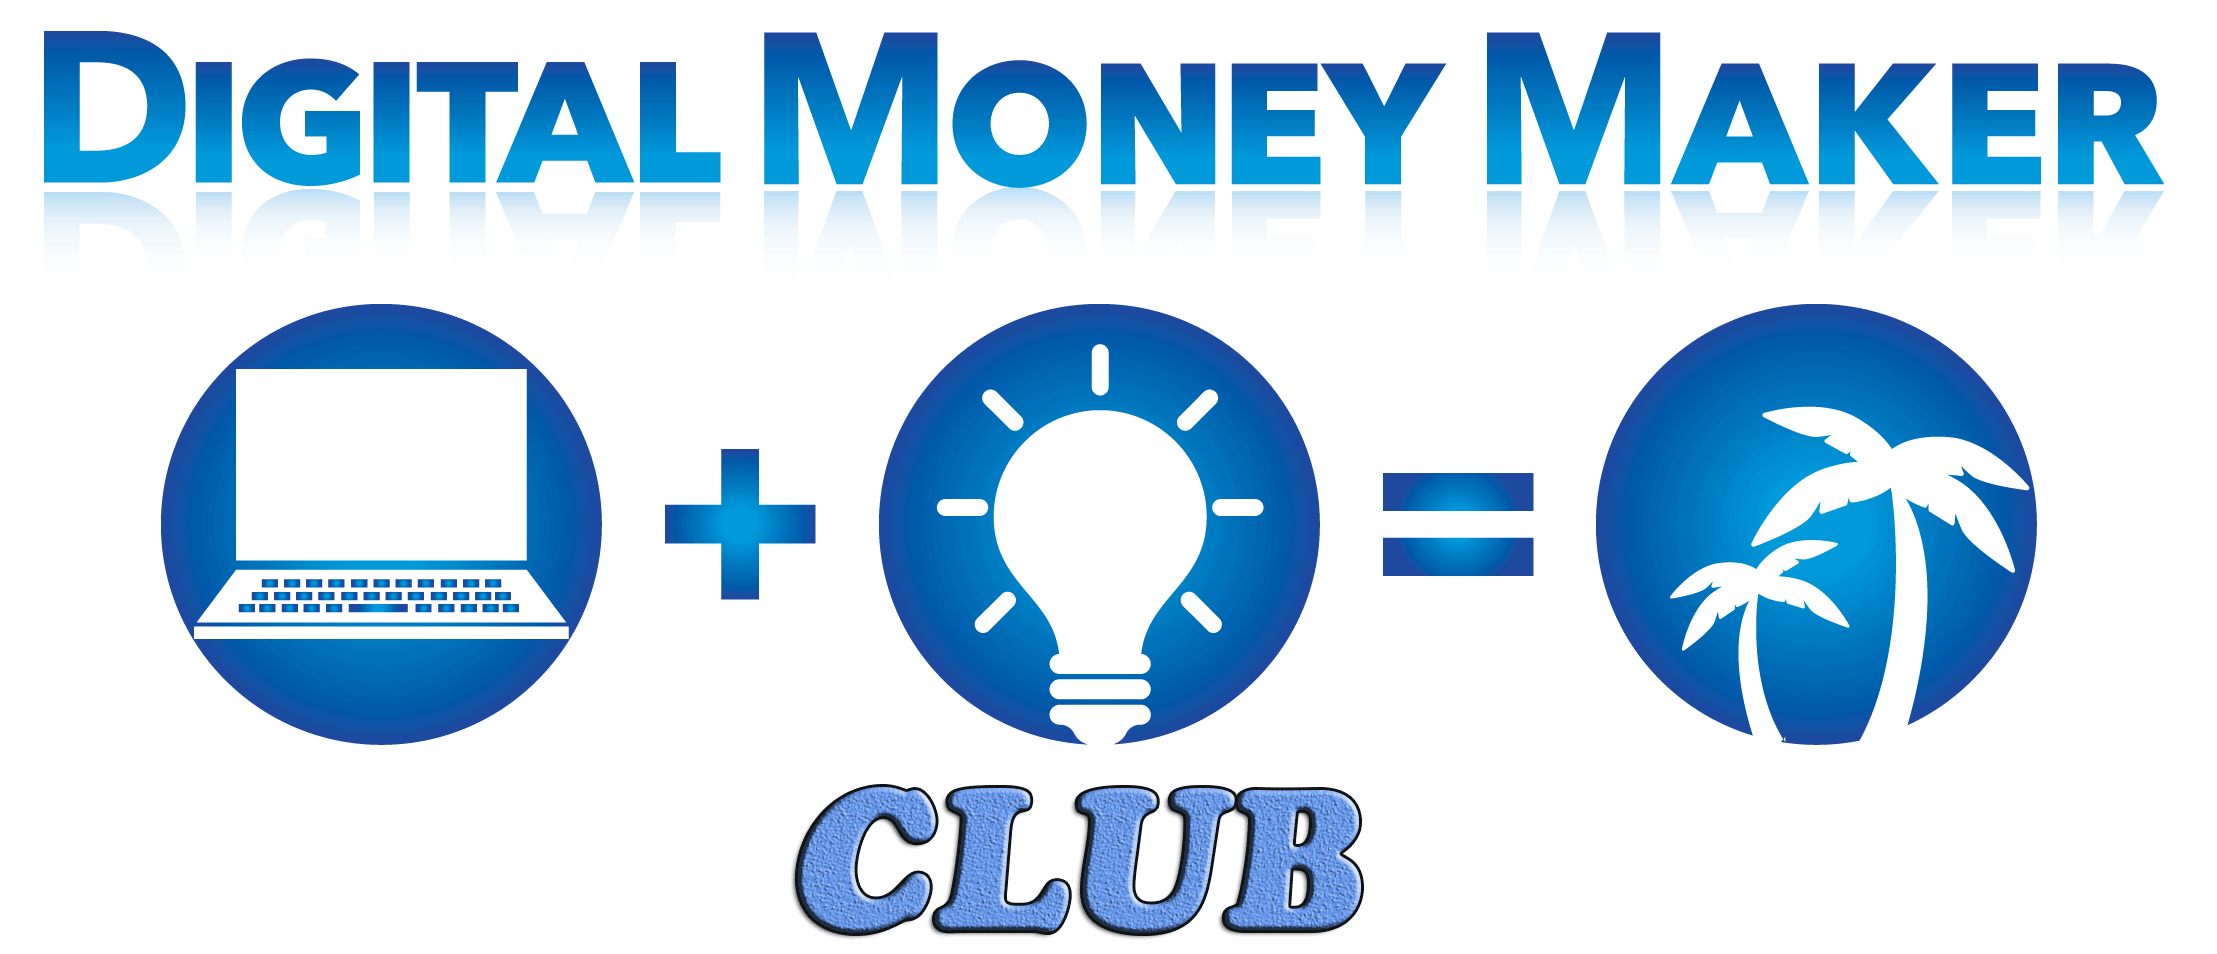 Digital Money Maker Club Erfahrungen